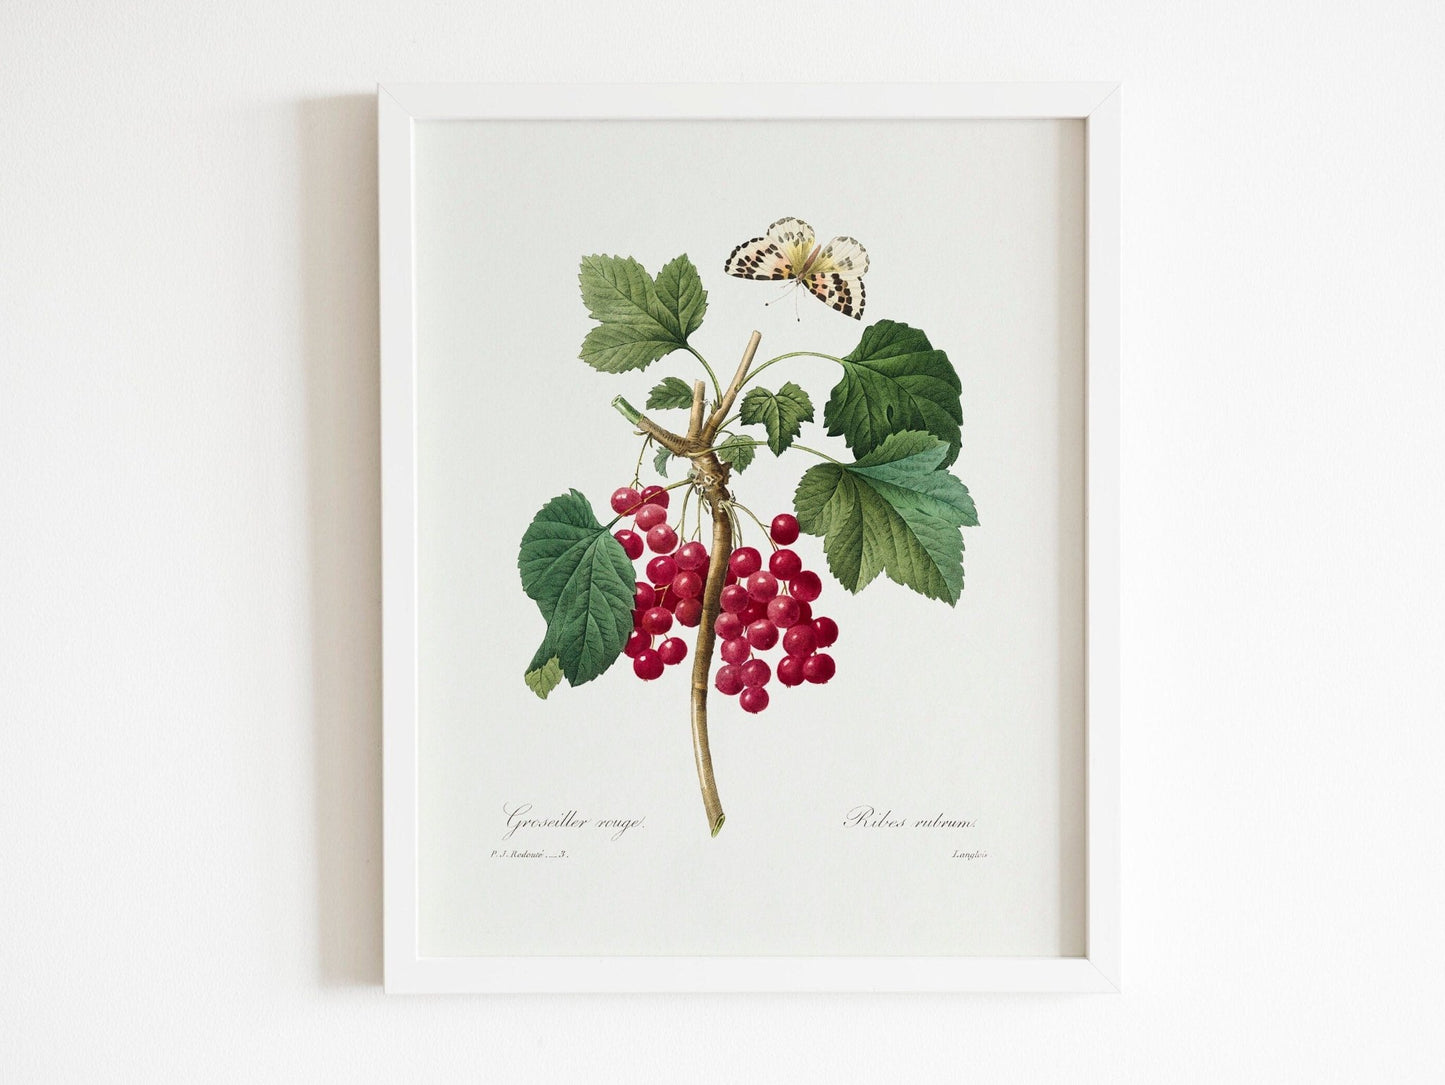 Set of 3 Fruit Prints by Pierre - Joseph Redouté (Raphael of Flowers) - Pathos Studio - Art Print Sets